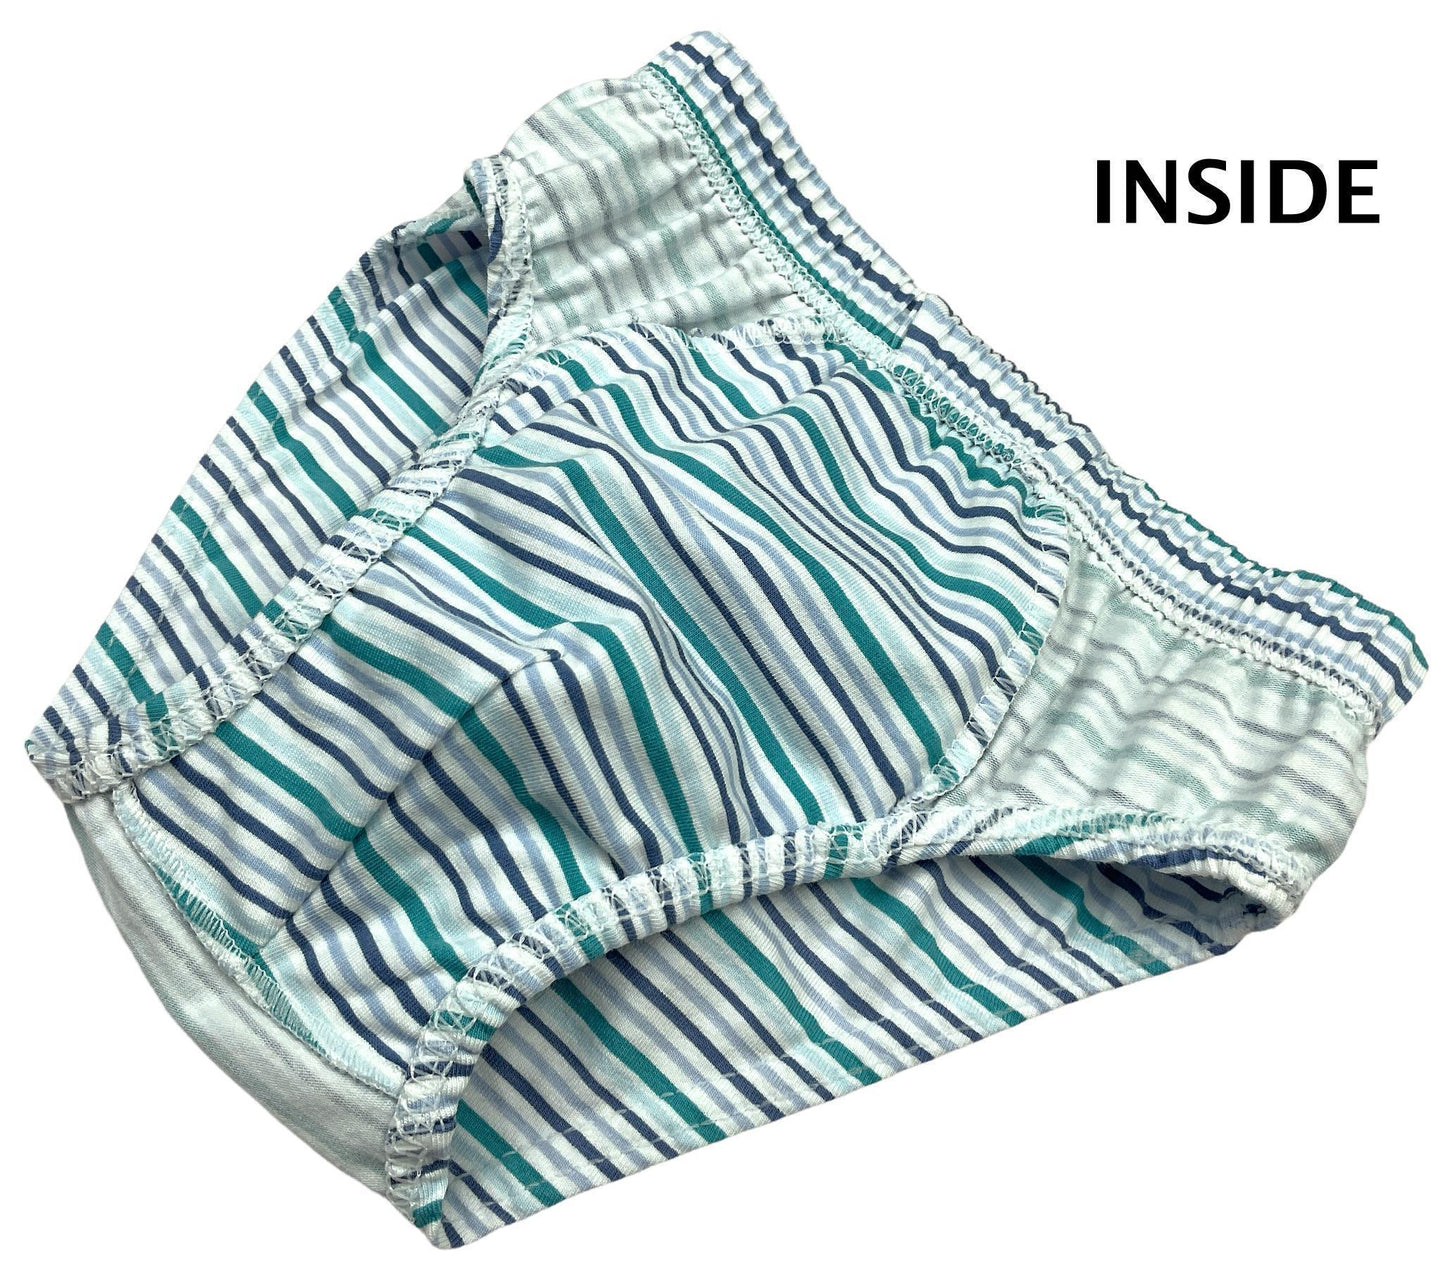 10 Jungen Slips Baumwolle Unterhosen Unterwäsche - Dinosaurier